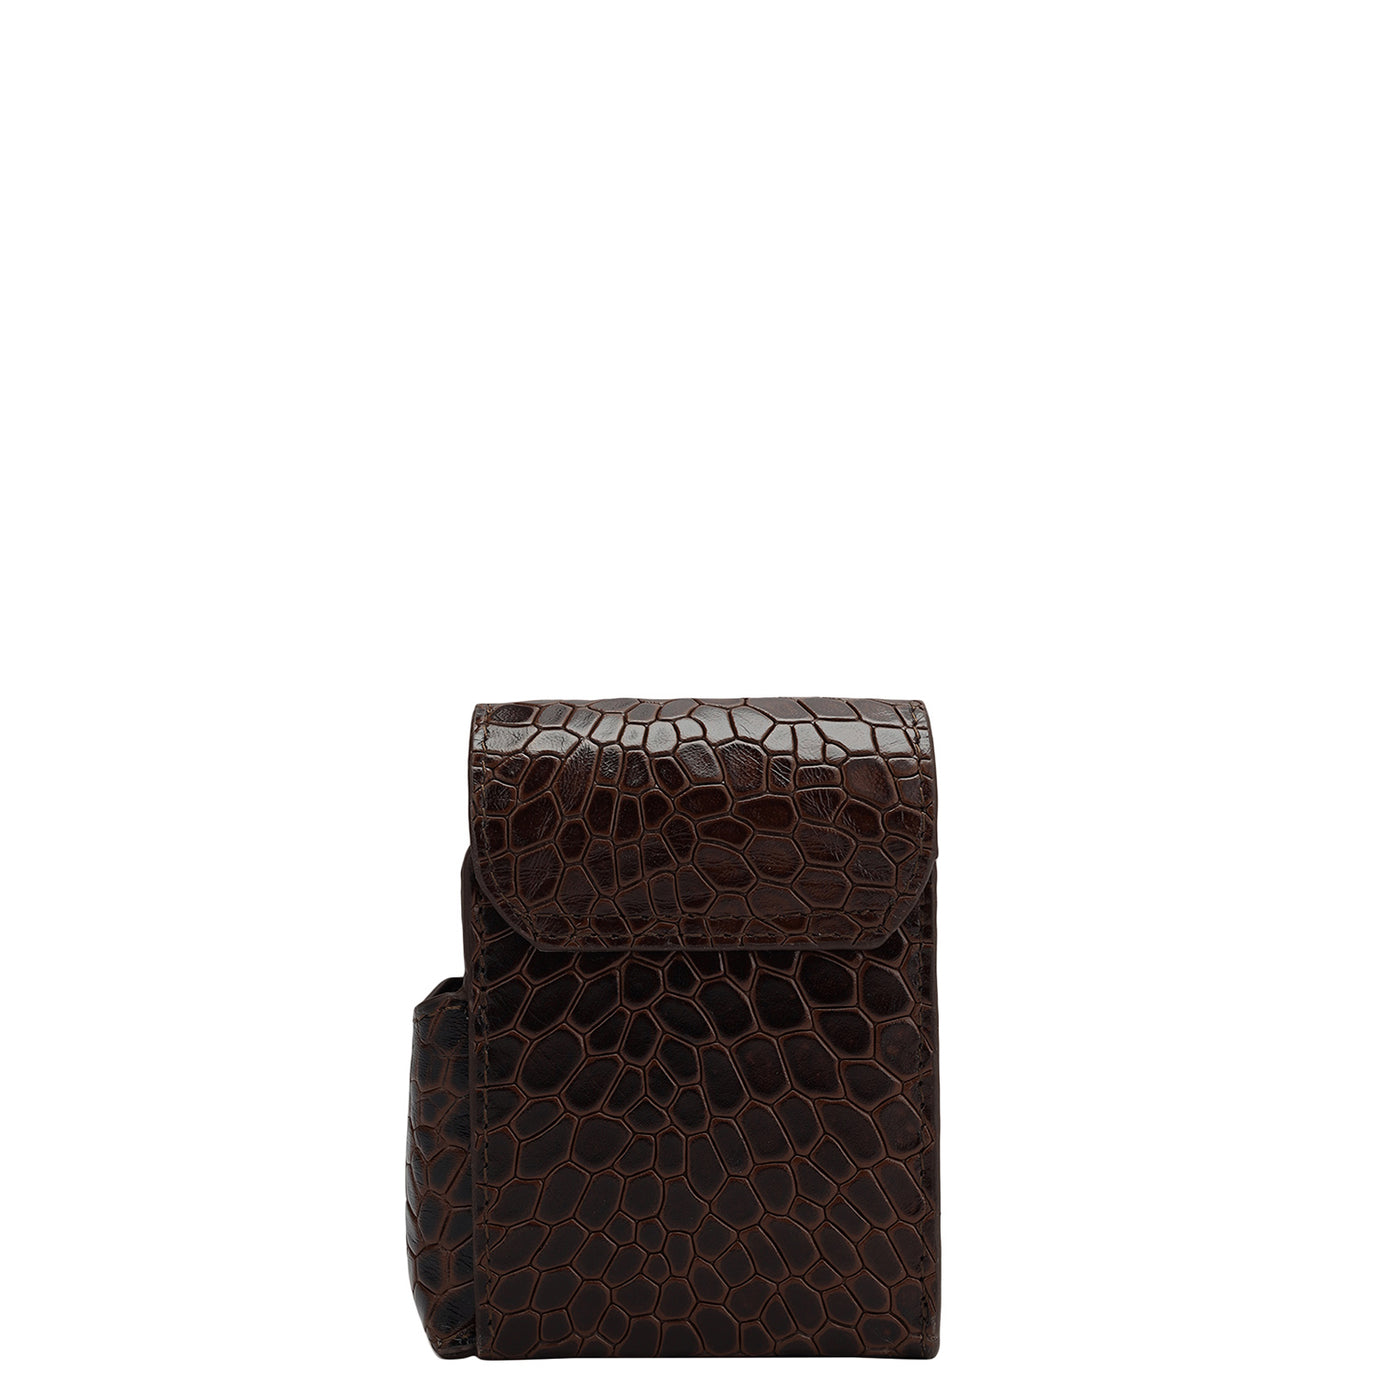 Croco Leather Cigarette Case - Brown